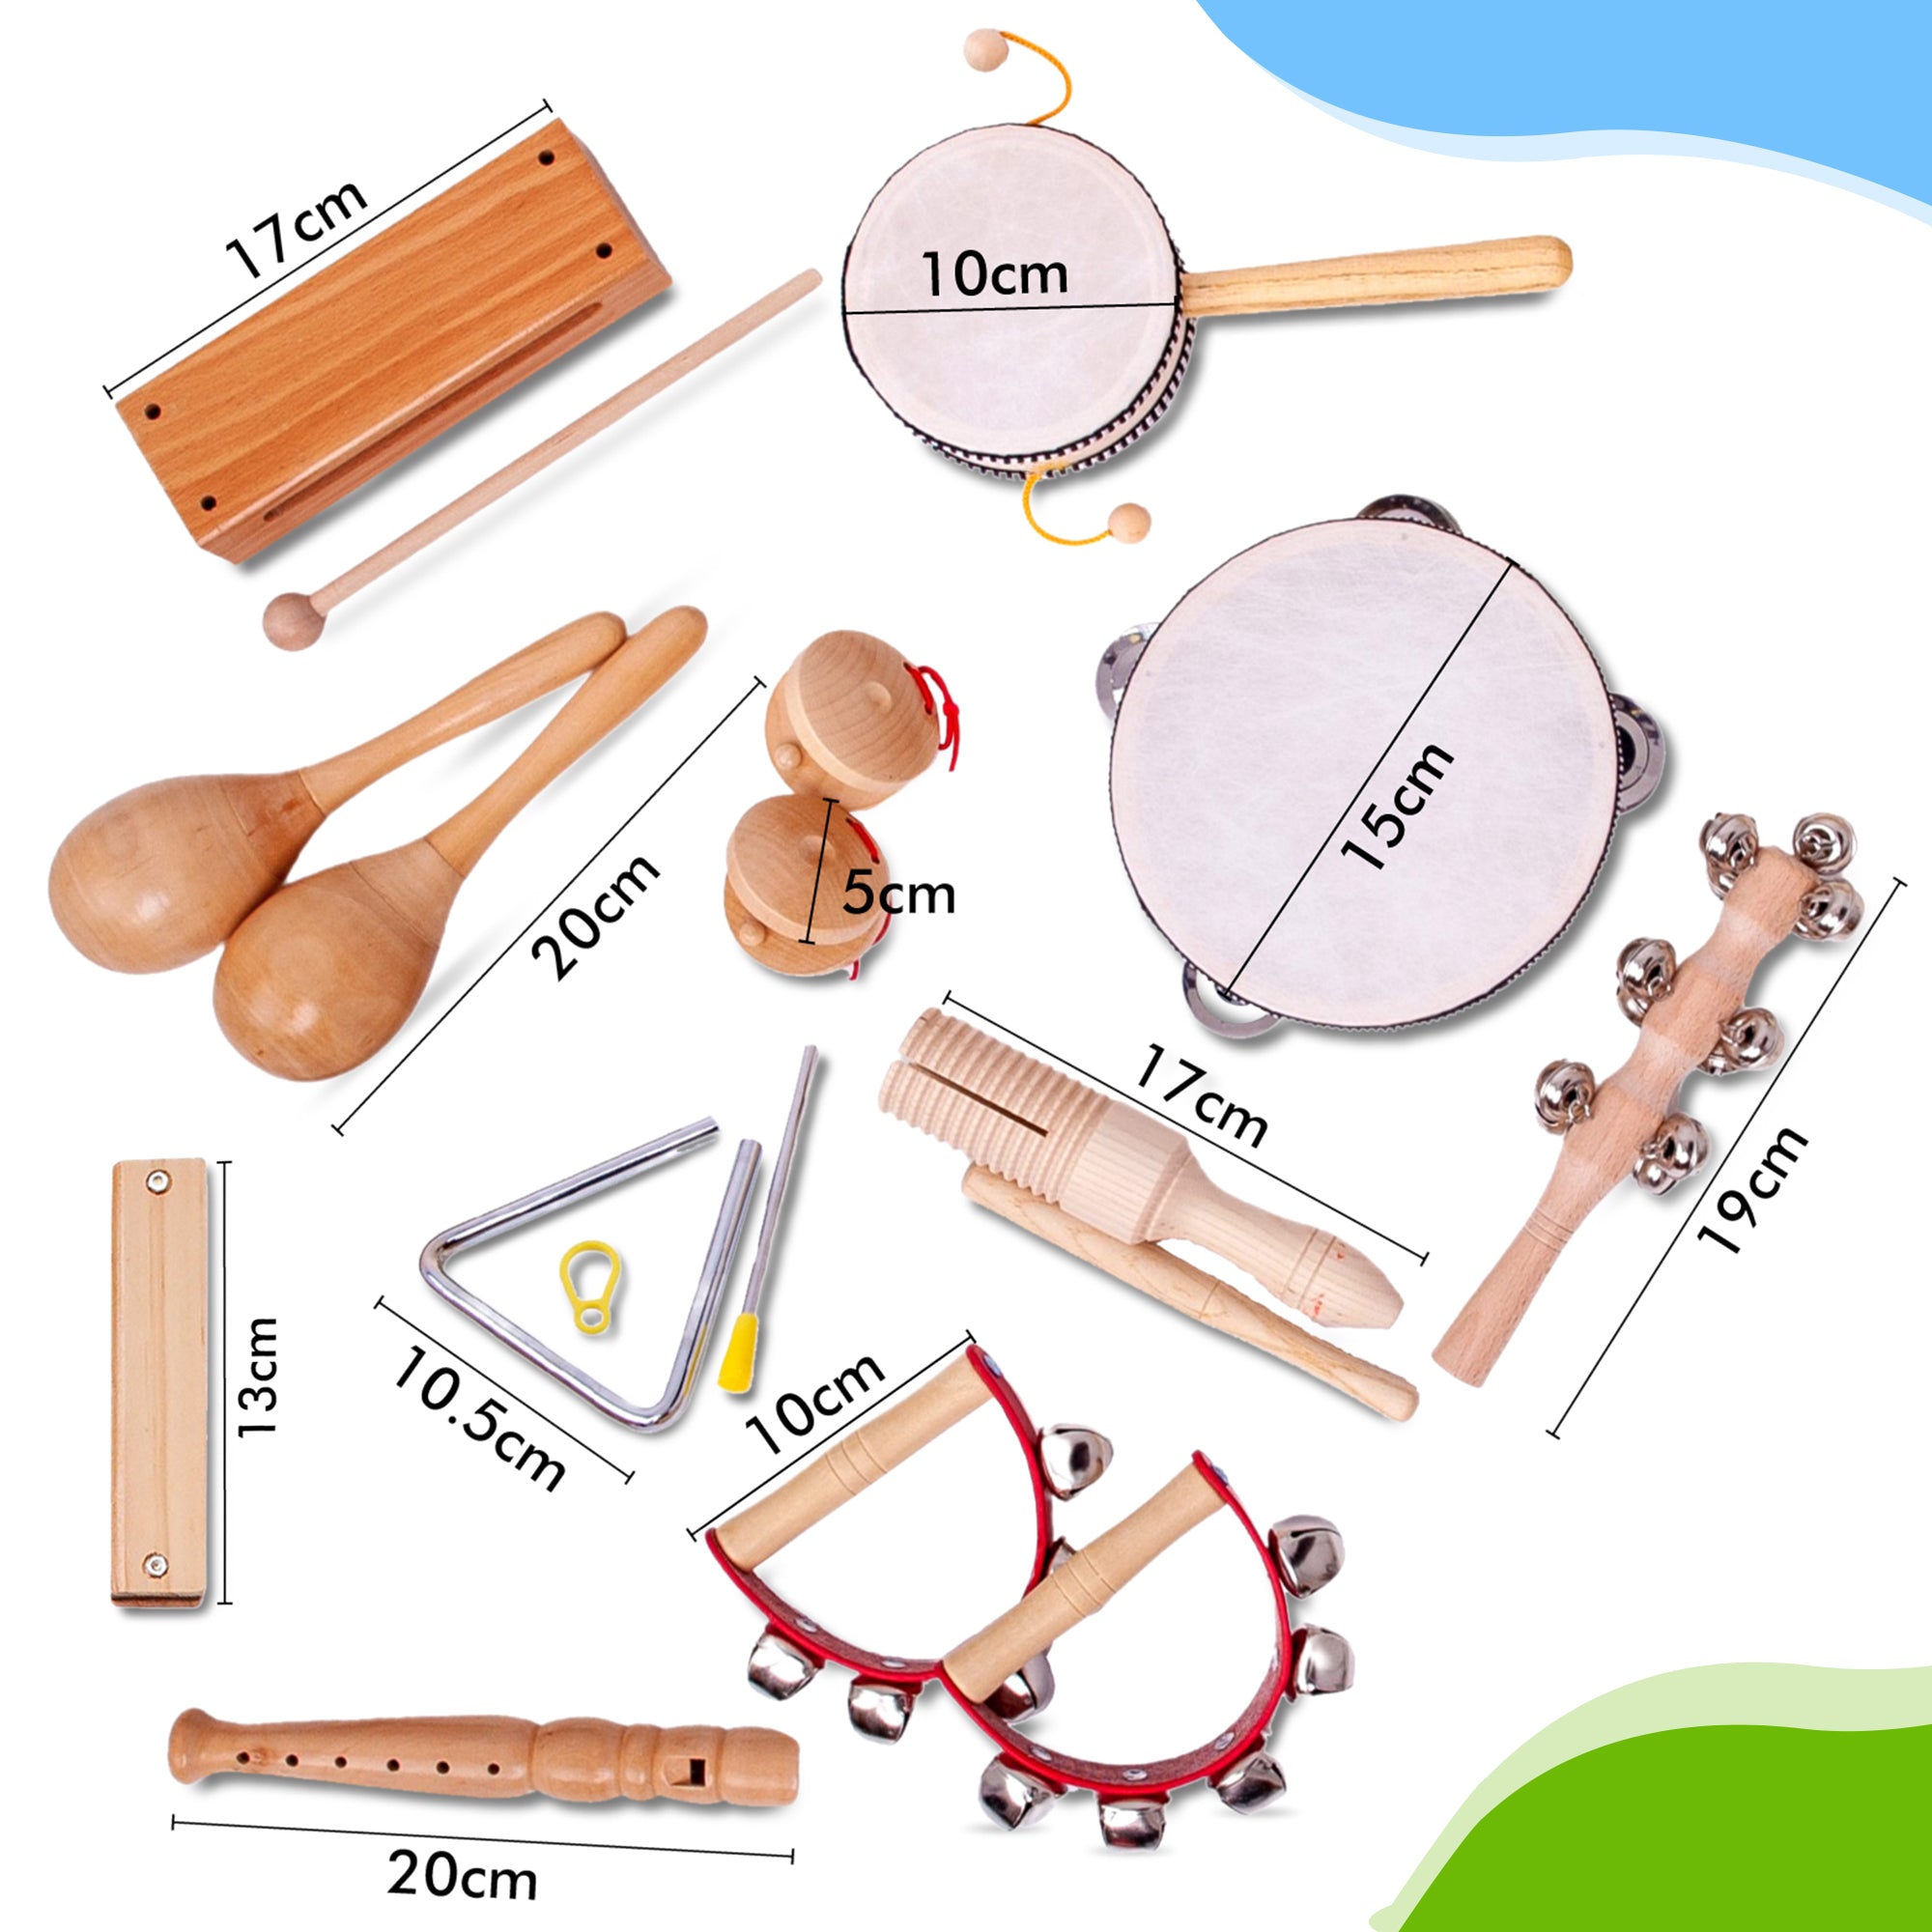 Disse er dimensionerne af trælegetøjsinstrumenter, specielt lavet til børn. Bestil dem med det samme og spil denne træblokfløjte eller mundharmonika i morgen. Du kan vælge dit eget legetøjsinstrument